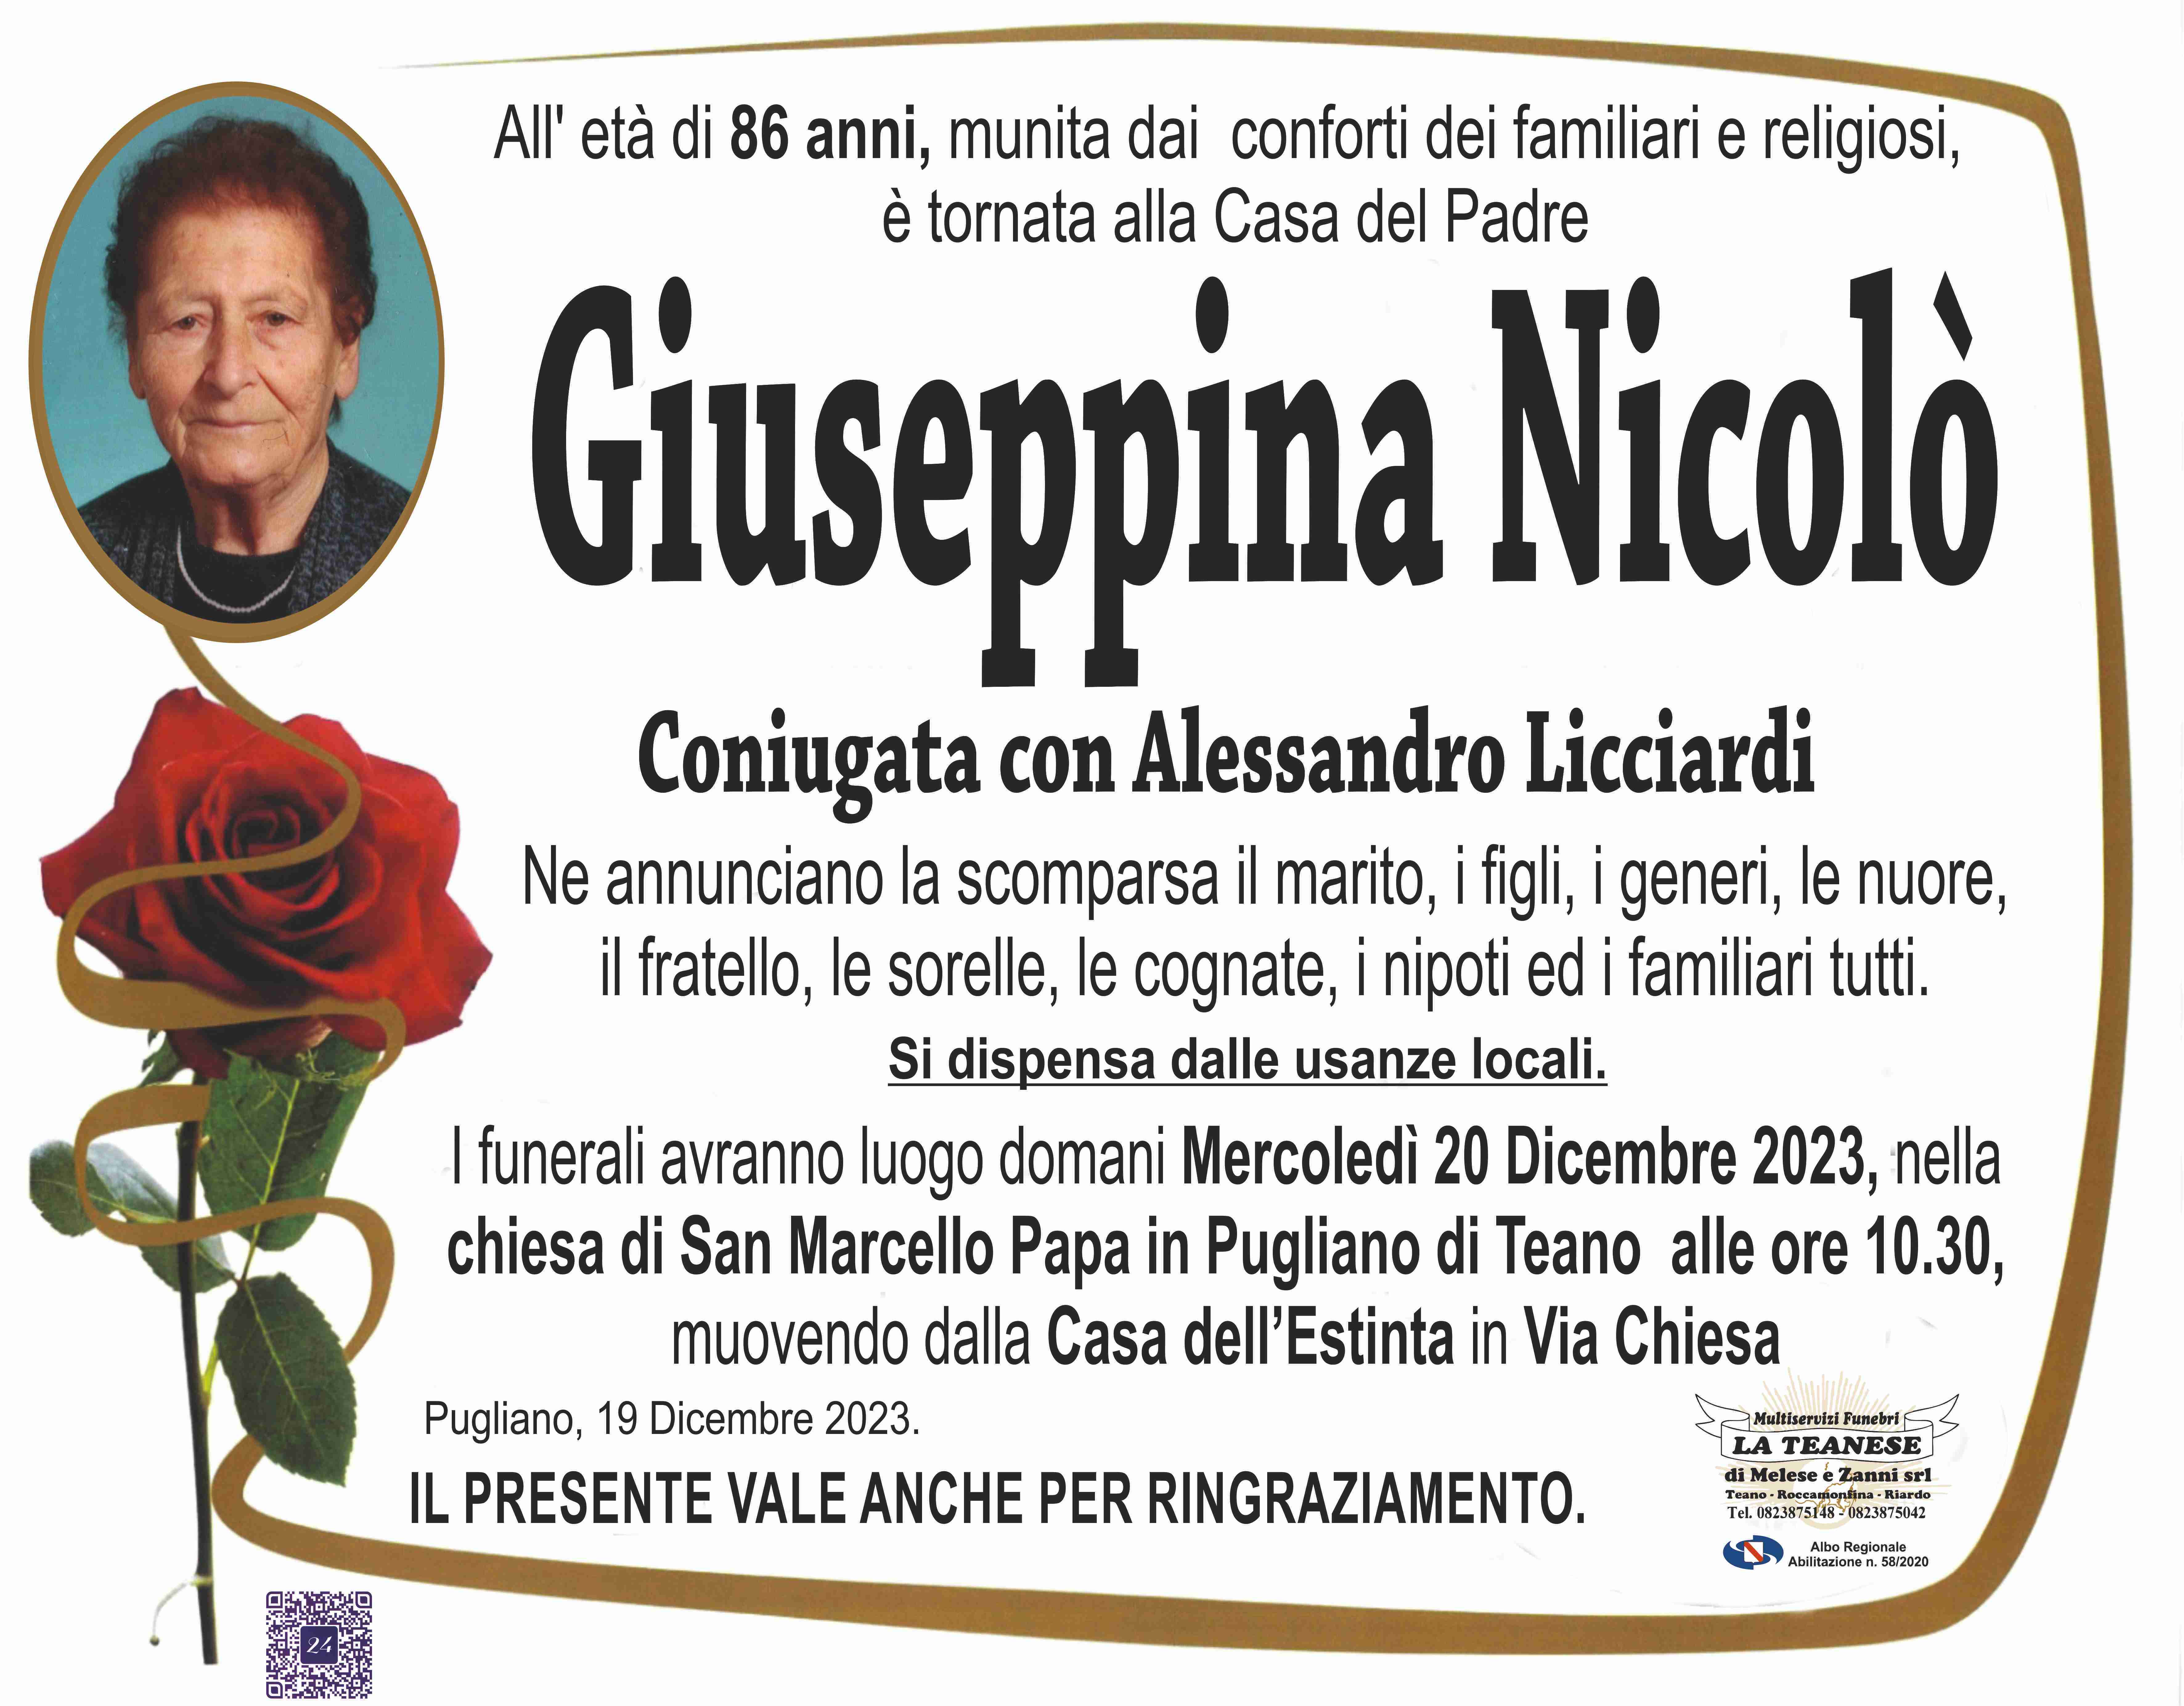 Giuseppina Nicolò